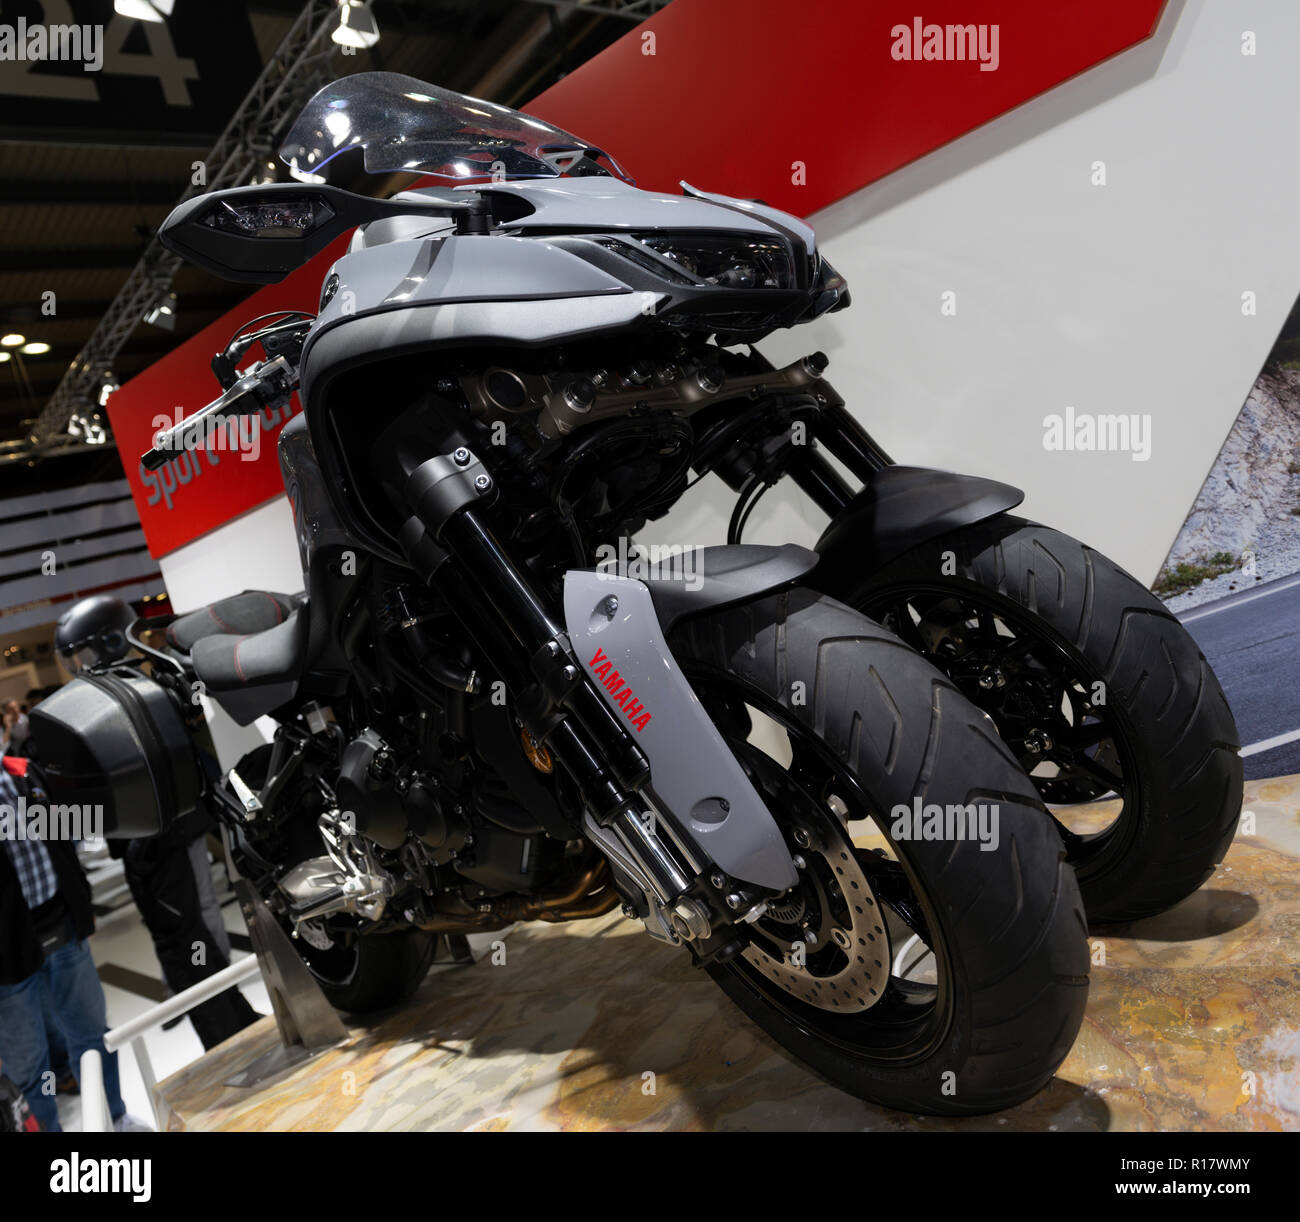 Yamaha niken hi-res stock photography and images - Alamy